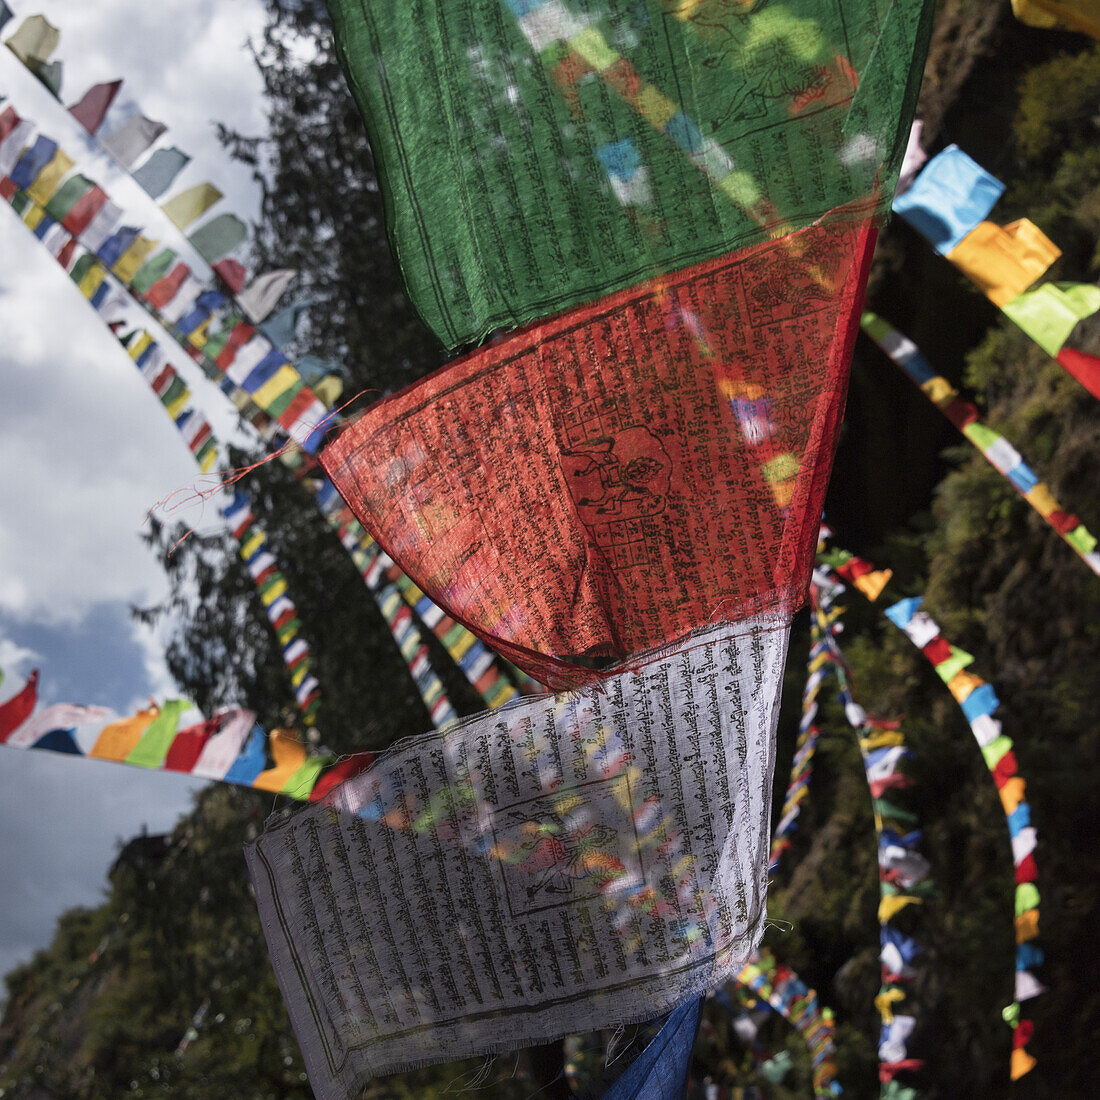 Colourful Prayer Flags; Paro, Bhutan